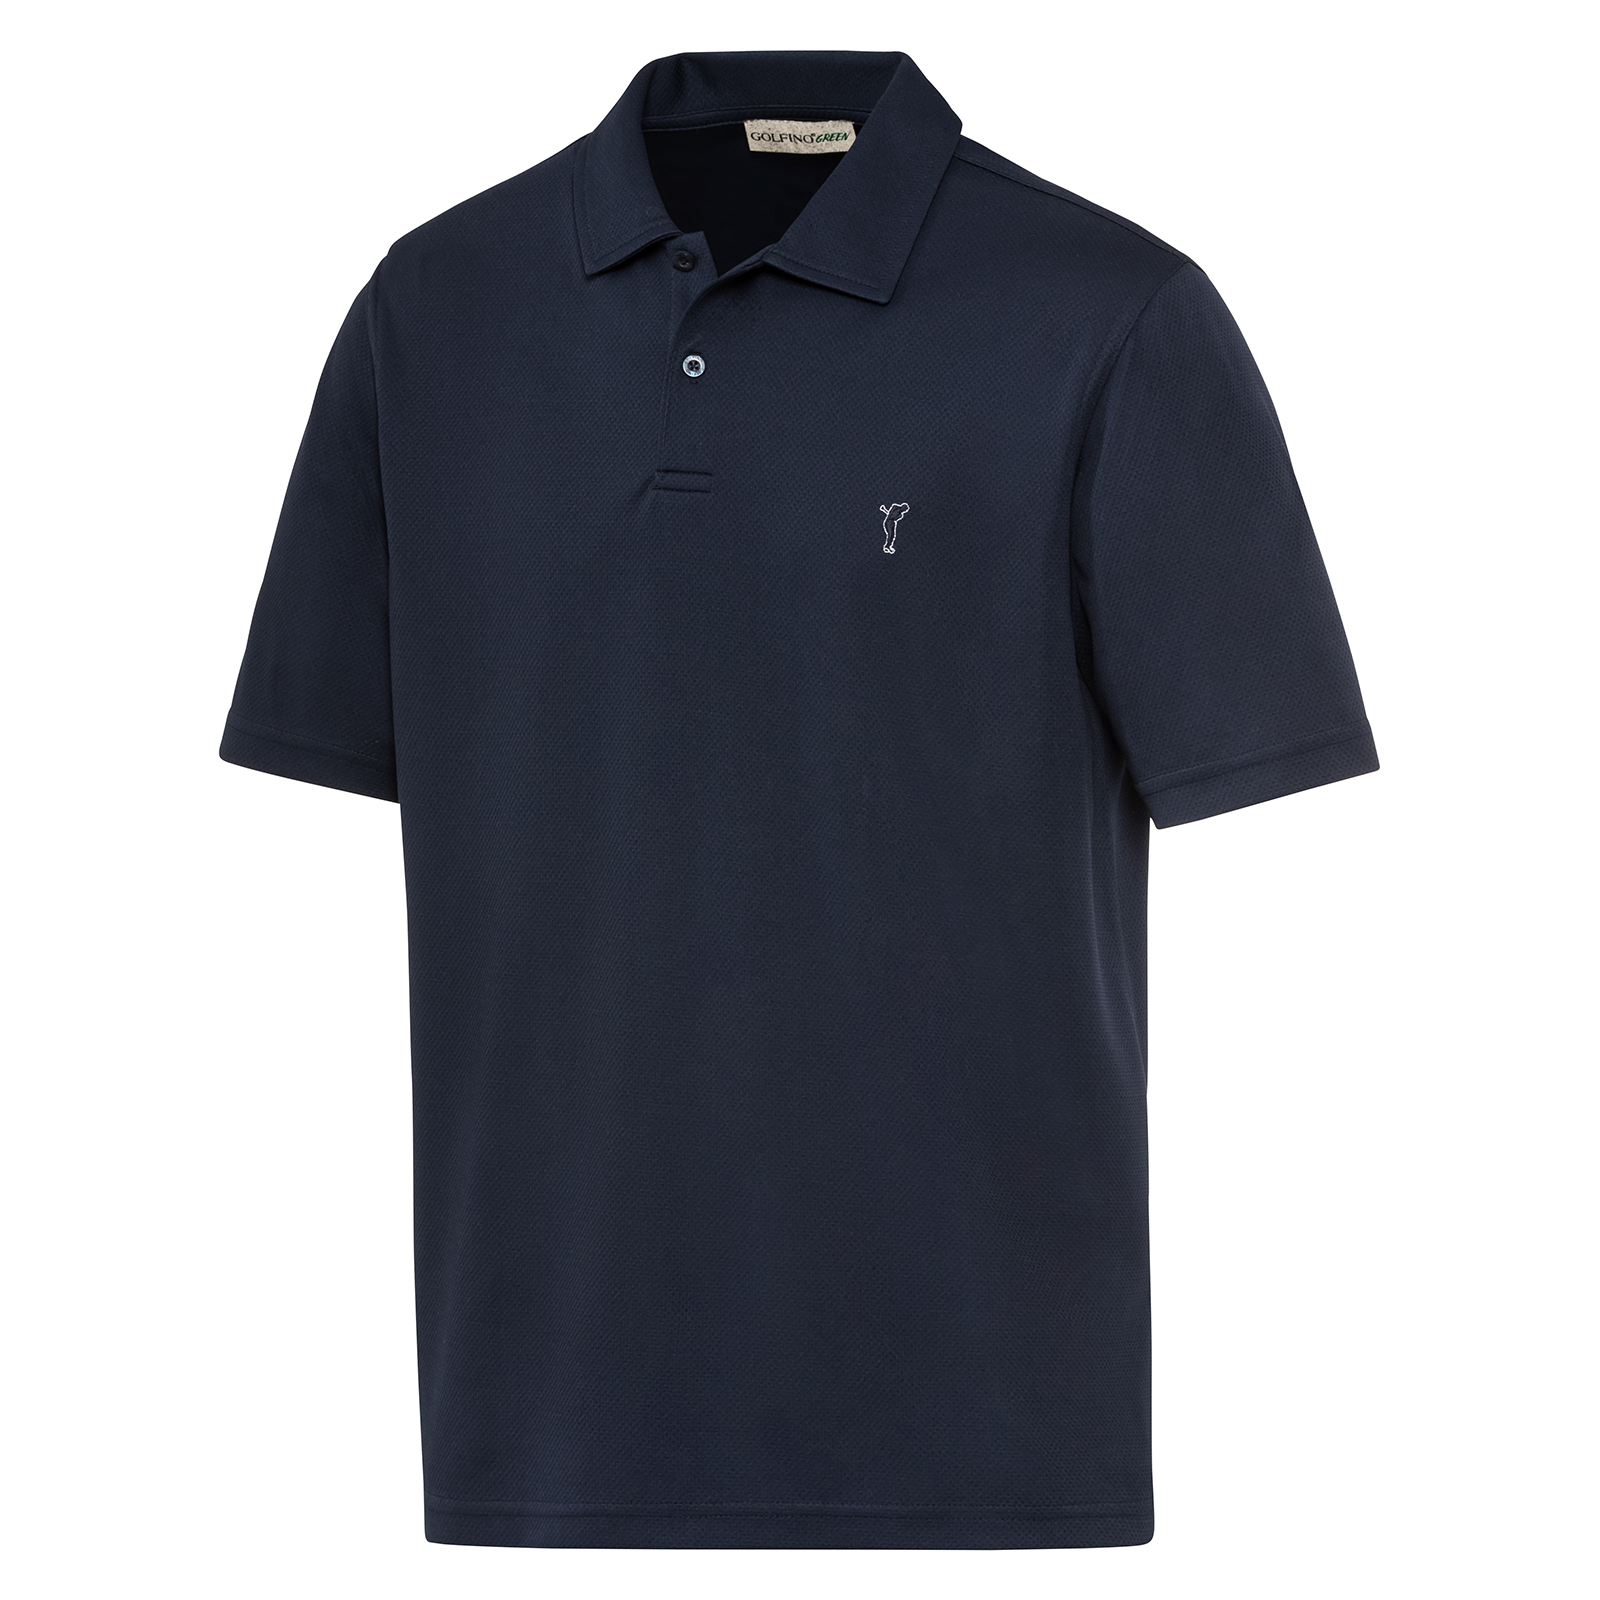 Herren Golf Shirt mit der nachhaltigen Funktionsfaser Kafetex®